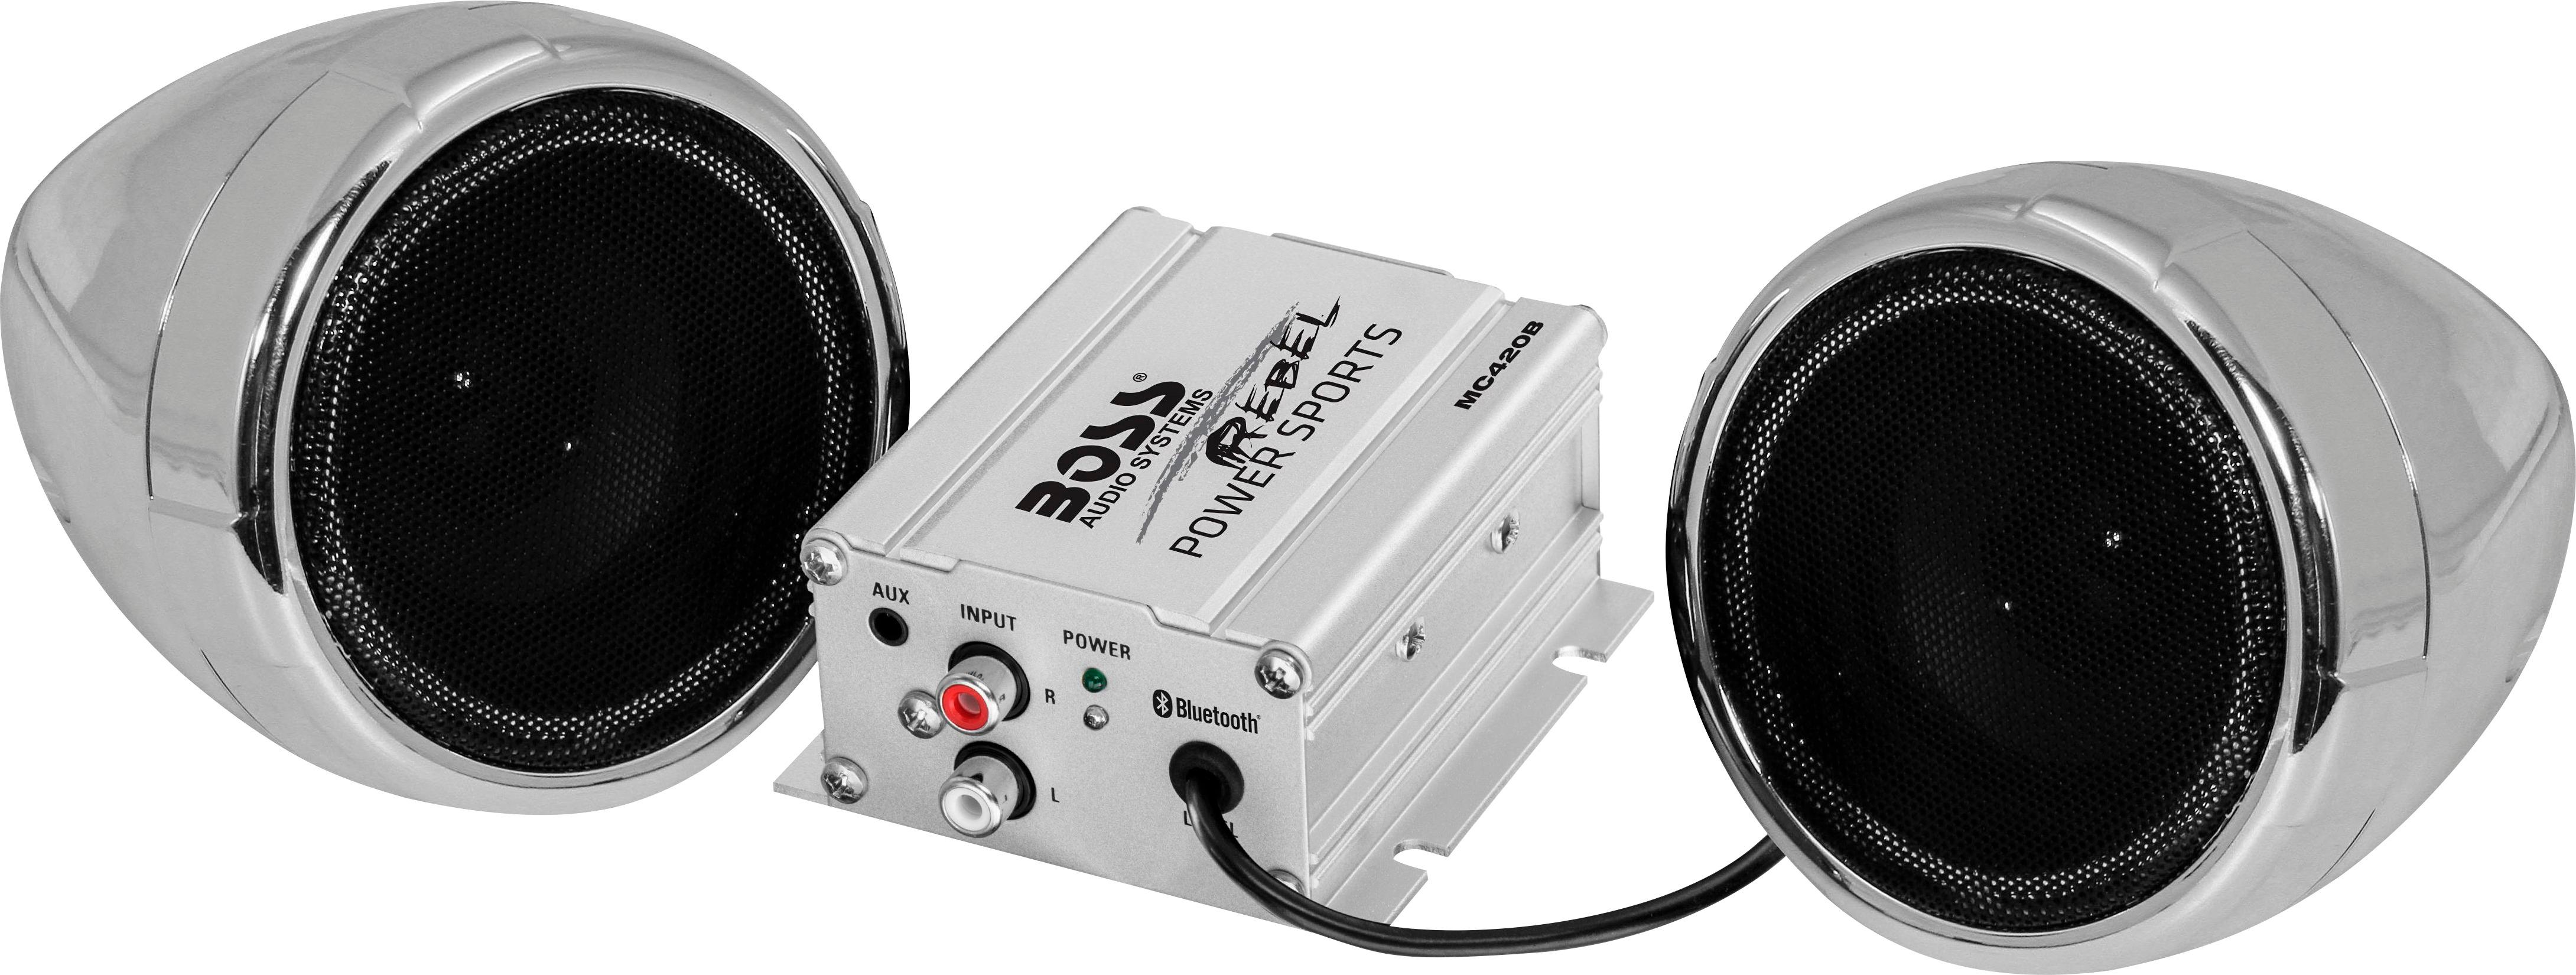 BOSS Audio - Powered Wireless Speakers (Pair) - Chrome